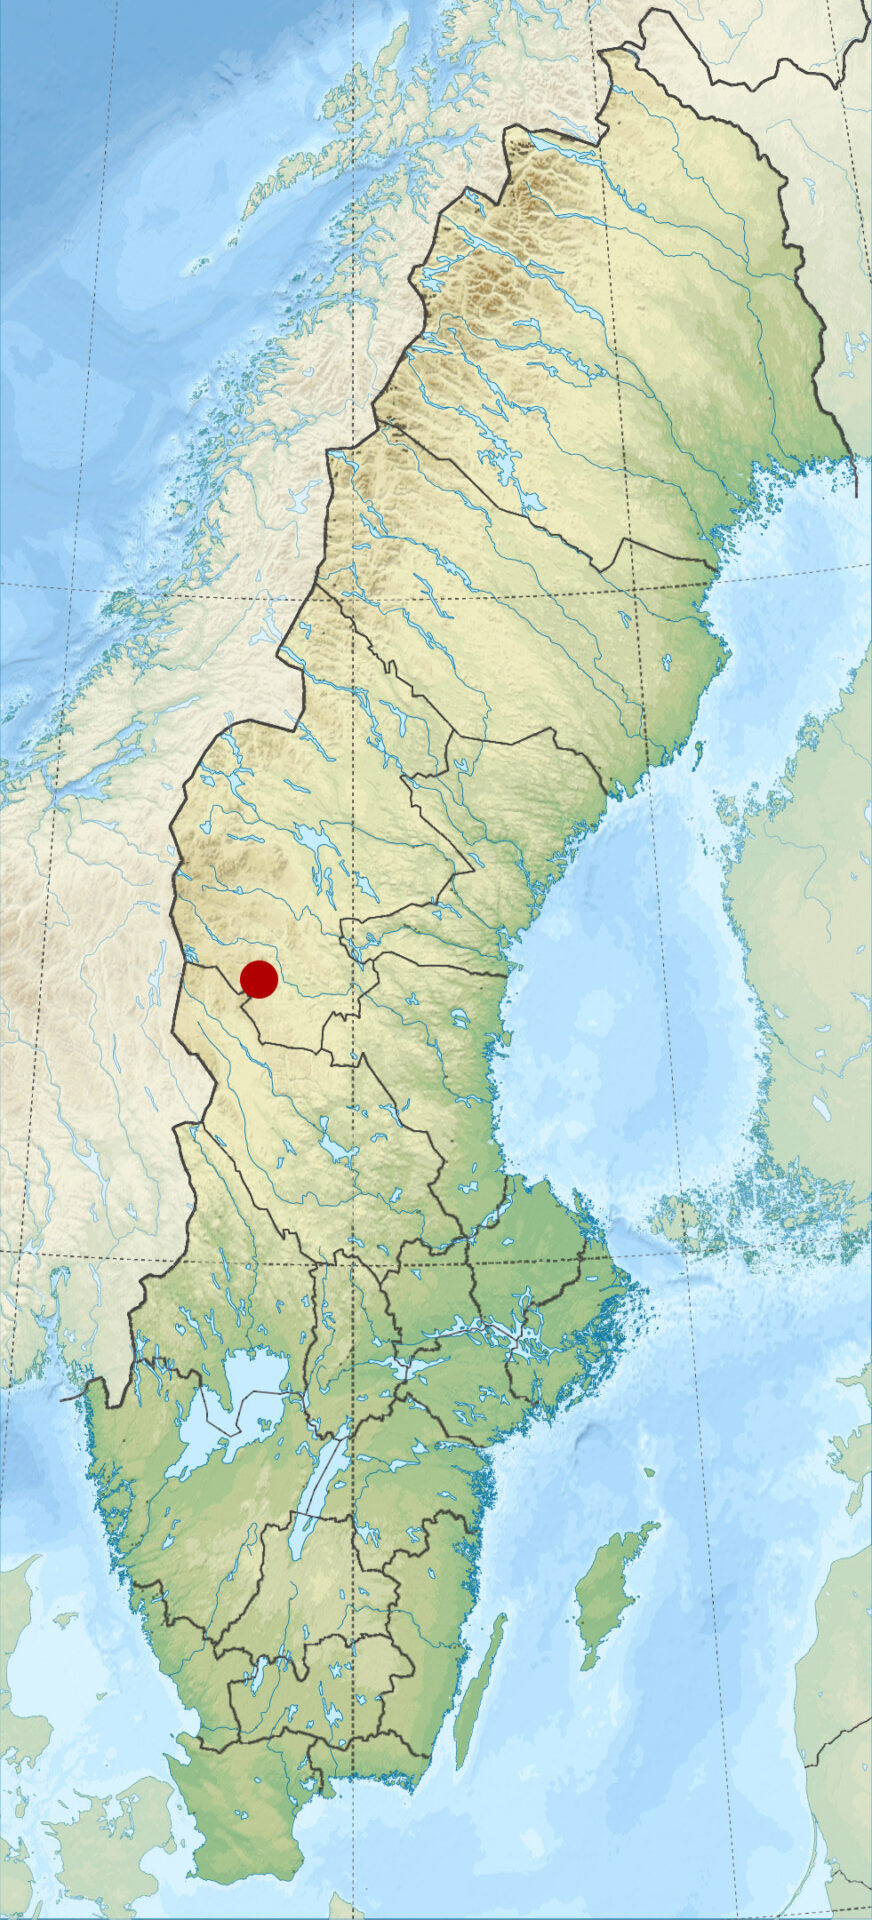 Kartbild av Sverige med Glötesvålen utmarkerad